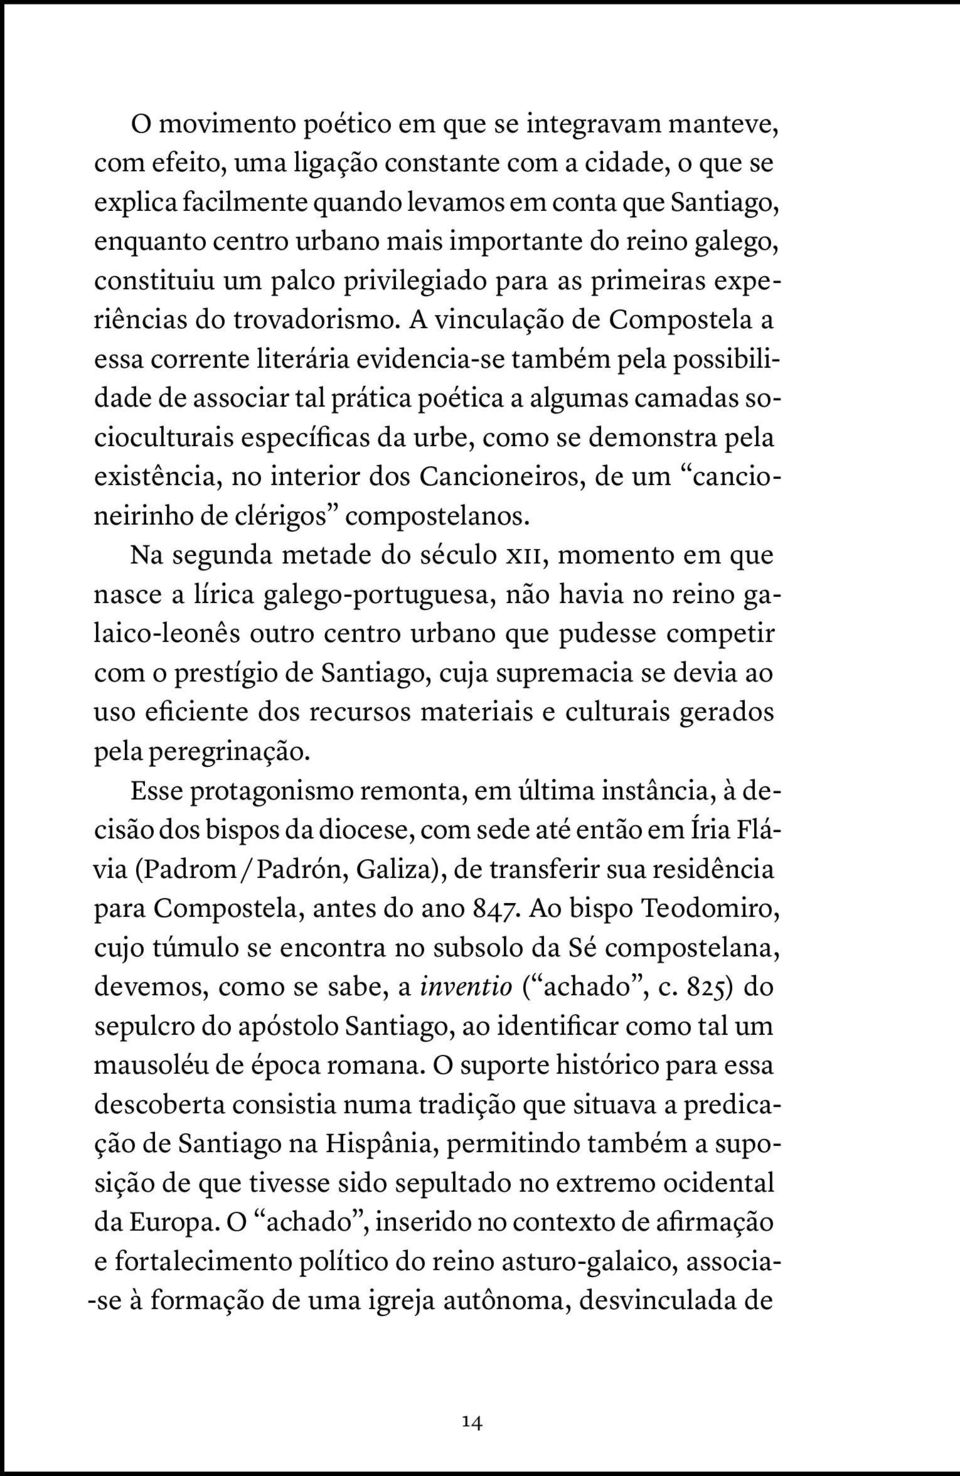 A vinculação de Compostela a essa corrente literária evidencia-se também pela possibilidade de associar tal prática poética a algumas camadas socioculturais específicas da urbe, como se demonstra